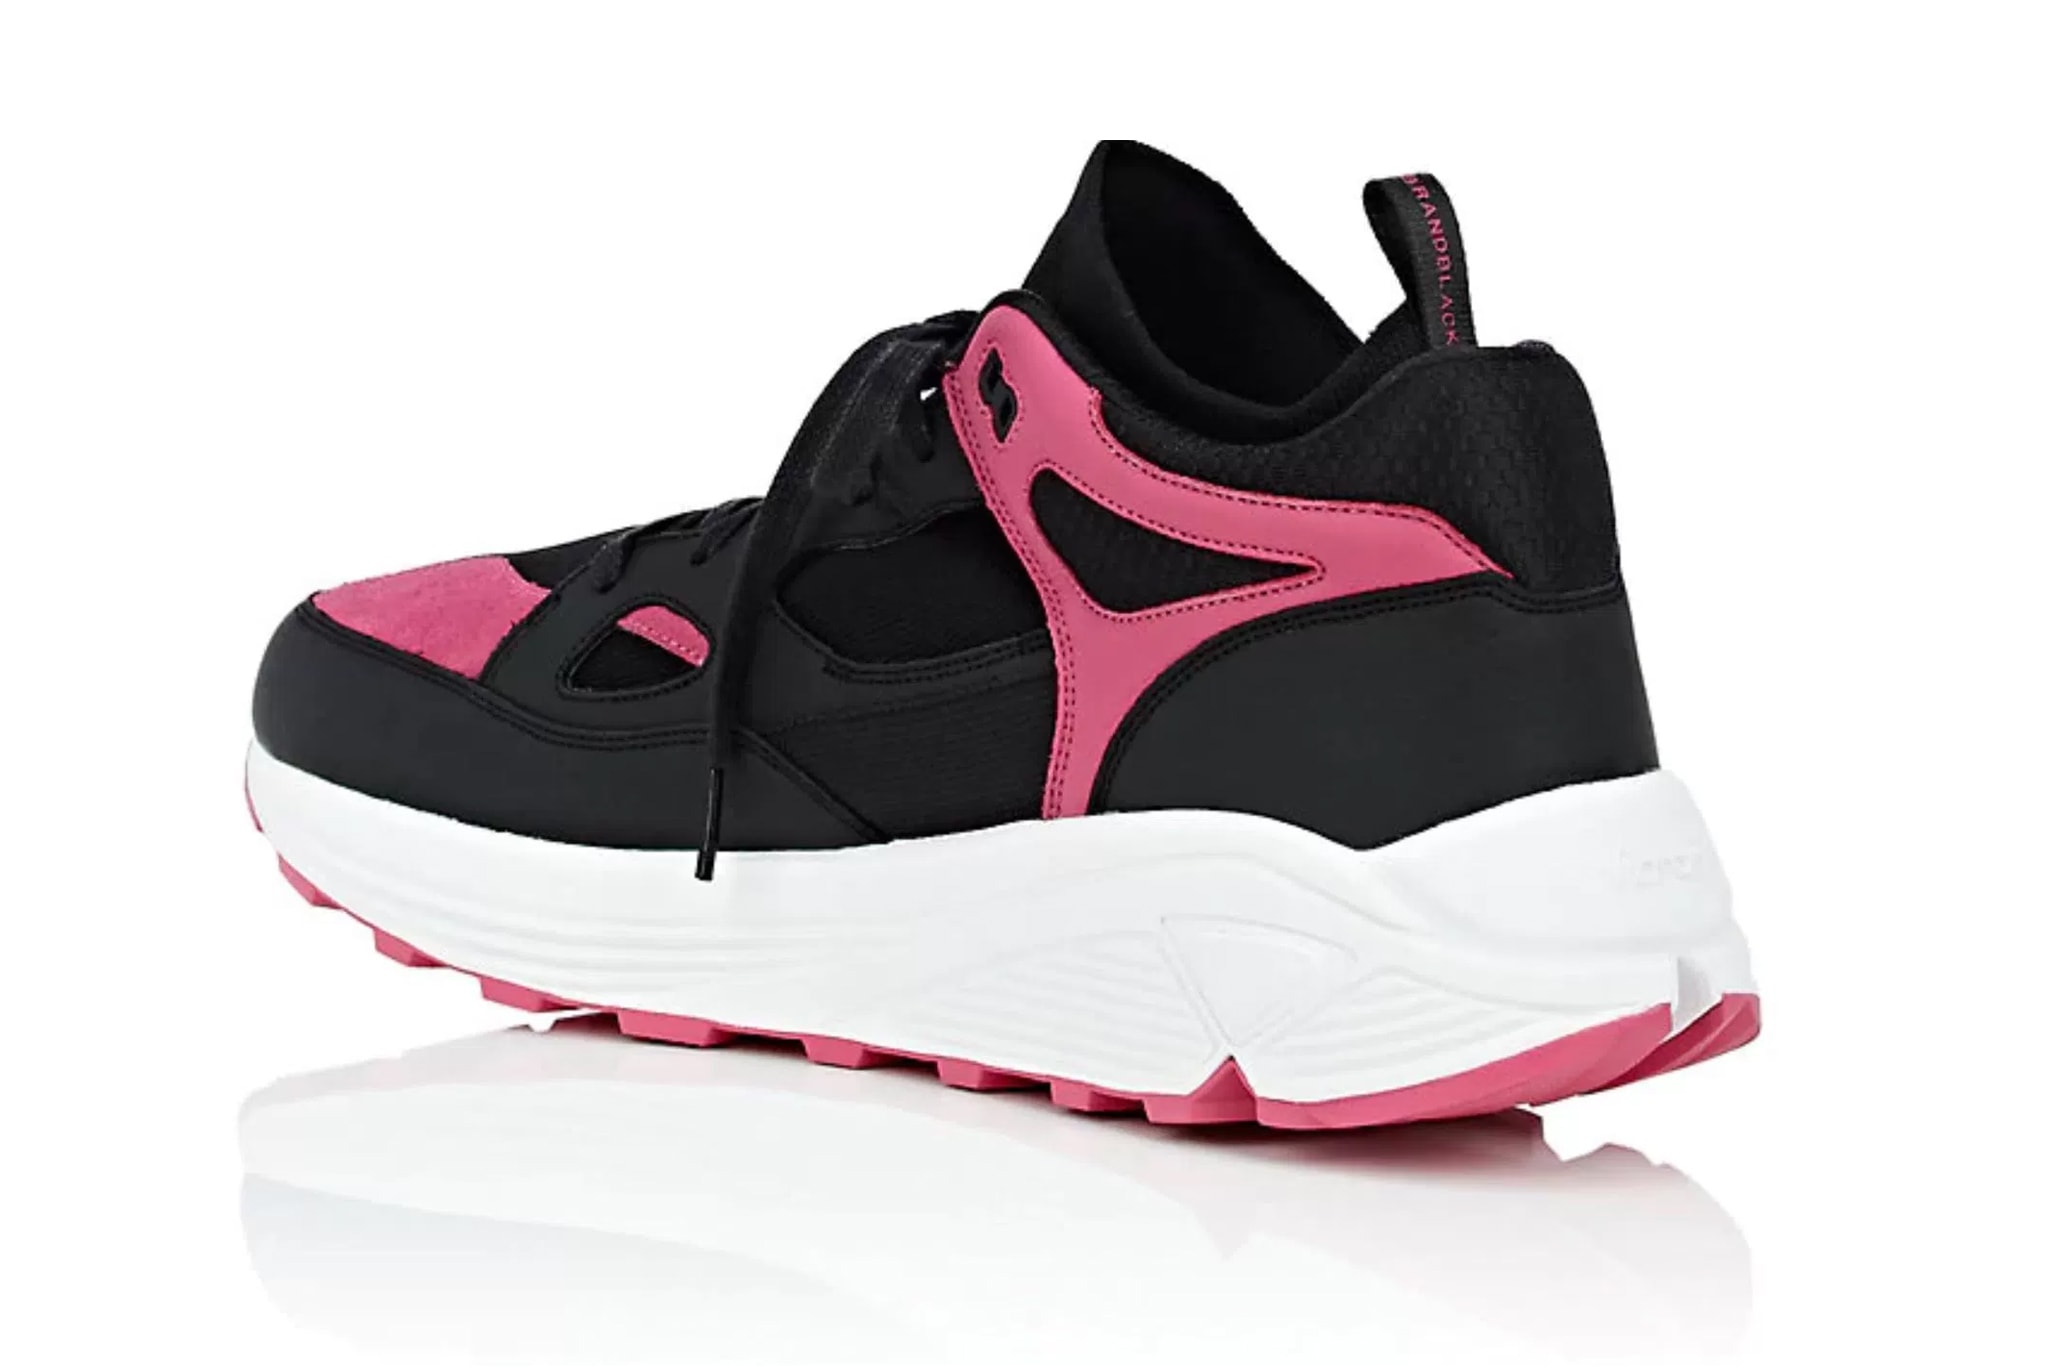 Brandblack Barneys New York Aura release info Black Pink Grey Navy Burgundy footwear sneakers